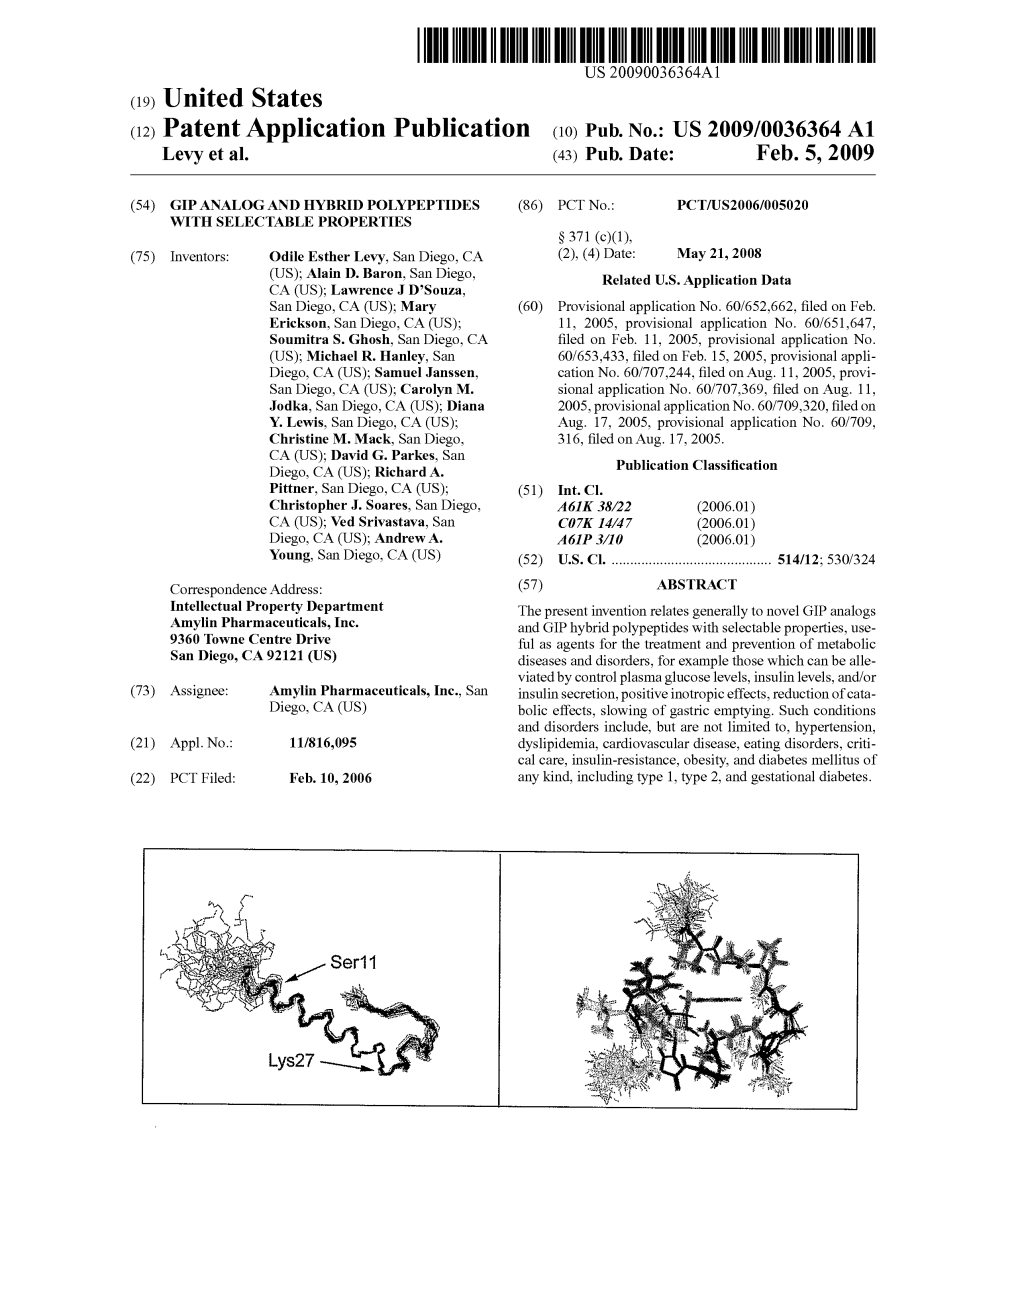 (12) Patent Application Publication (10) Pub. No.: US 2009/0036364 A1 Levy Et Al